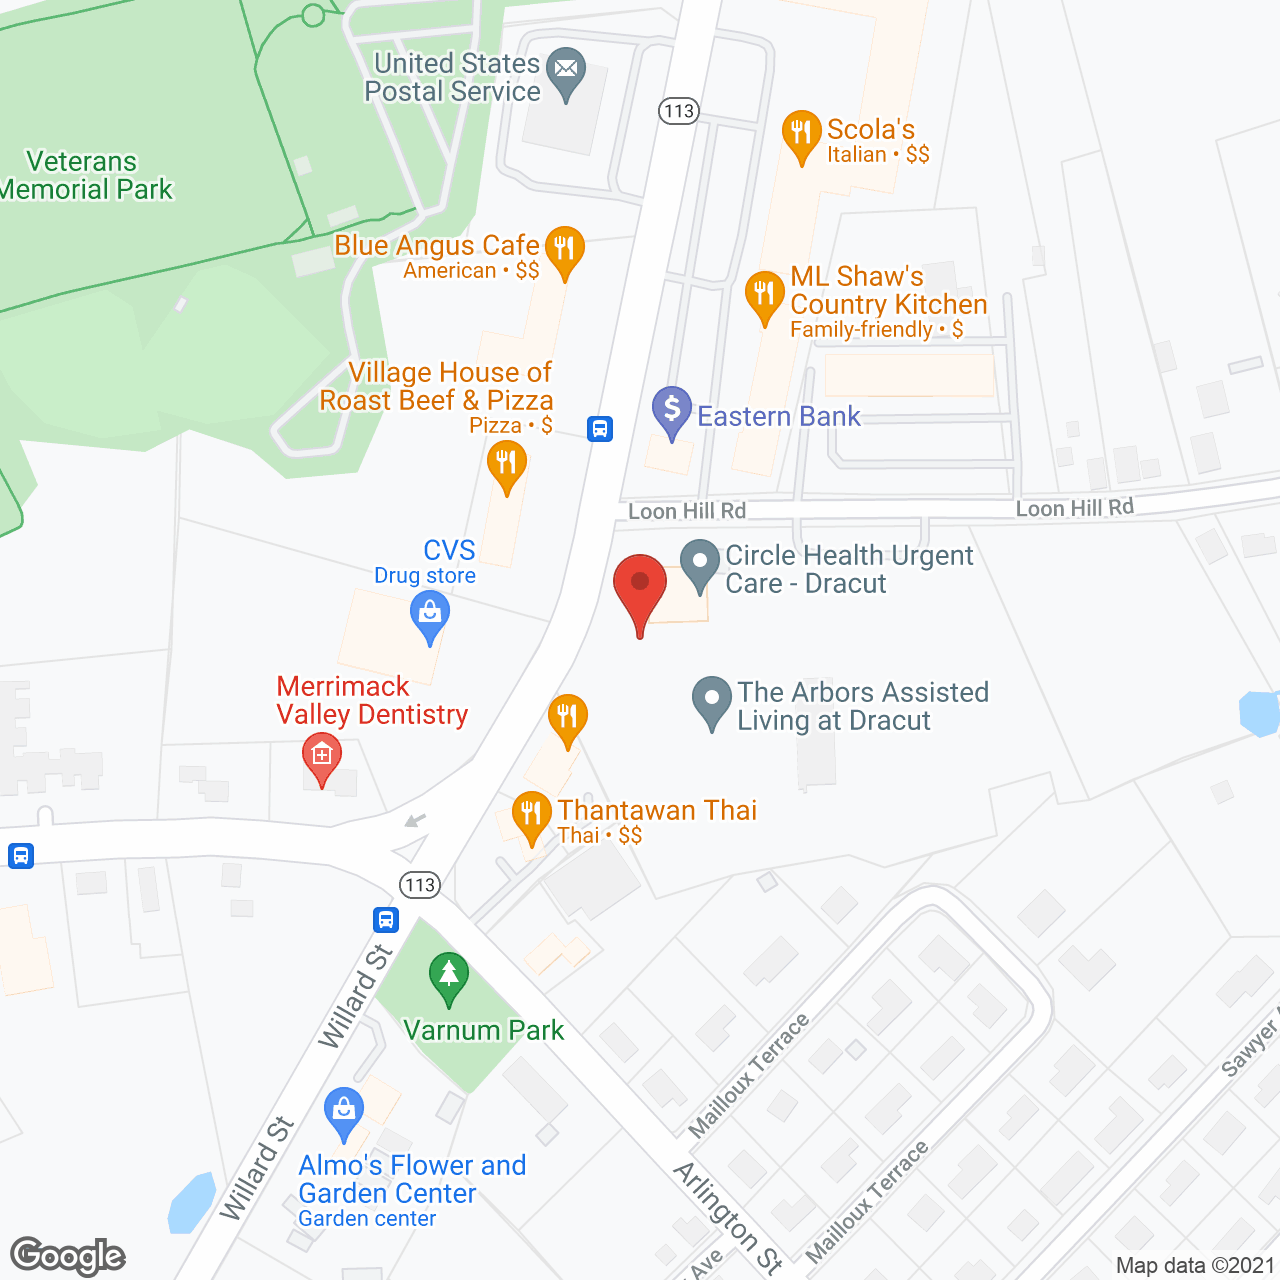 The Arbors at Dracut in google map